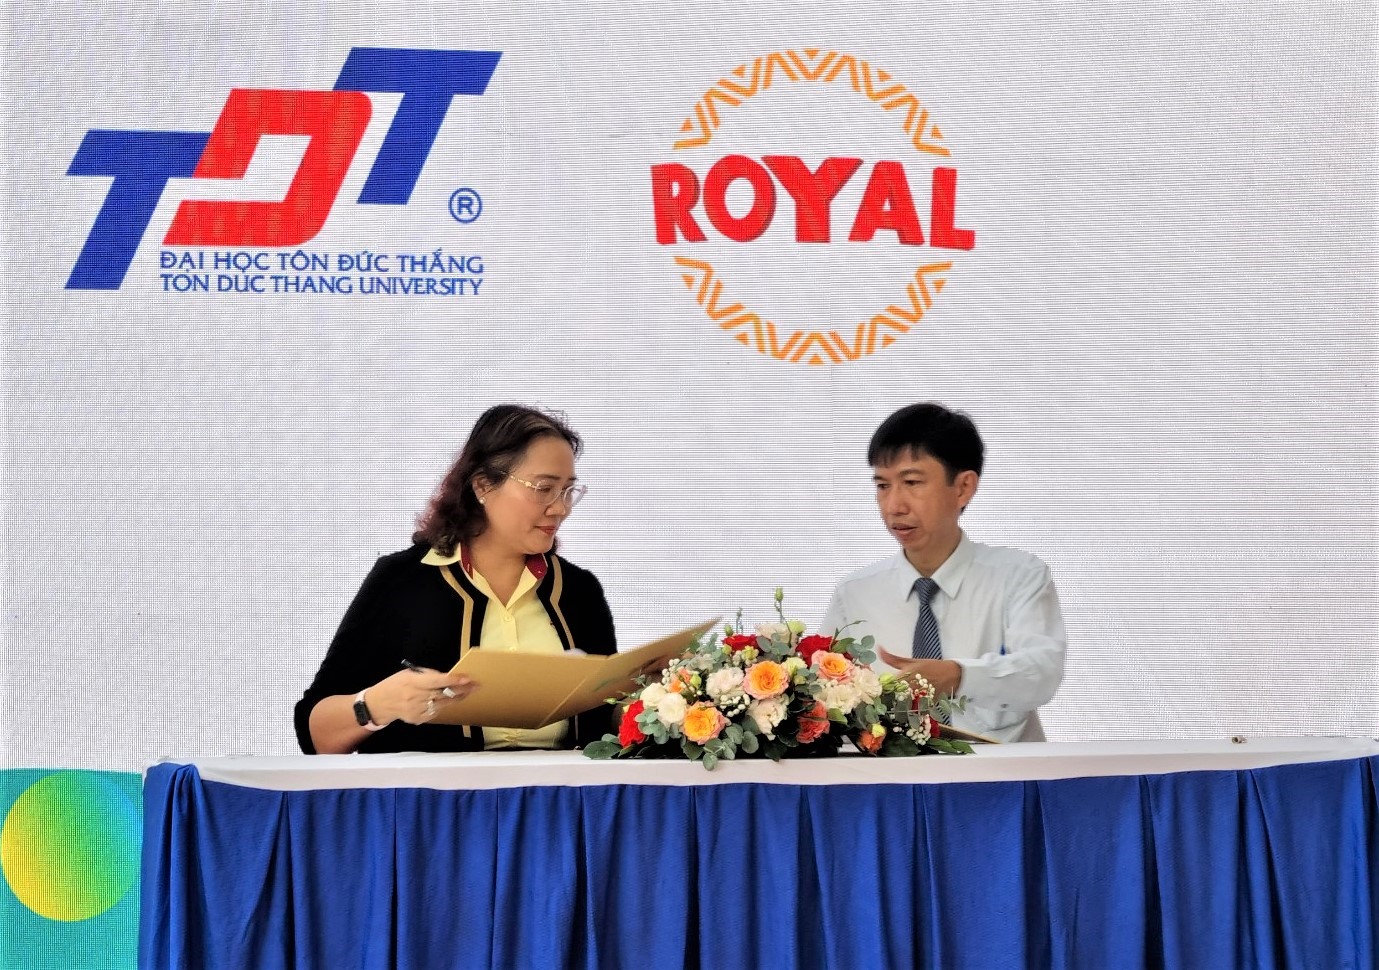 Tiến sĩ Võ Hoàng Duy (bên phải) - Phó Hiệu trưởng TDTU ký kết hợp tác với đại diện doanh nghiệp. Ảnh: Nam Dương